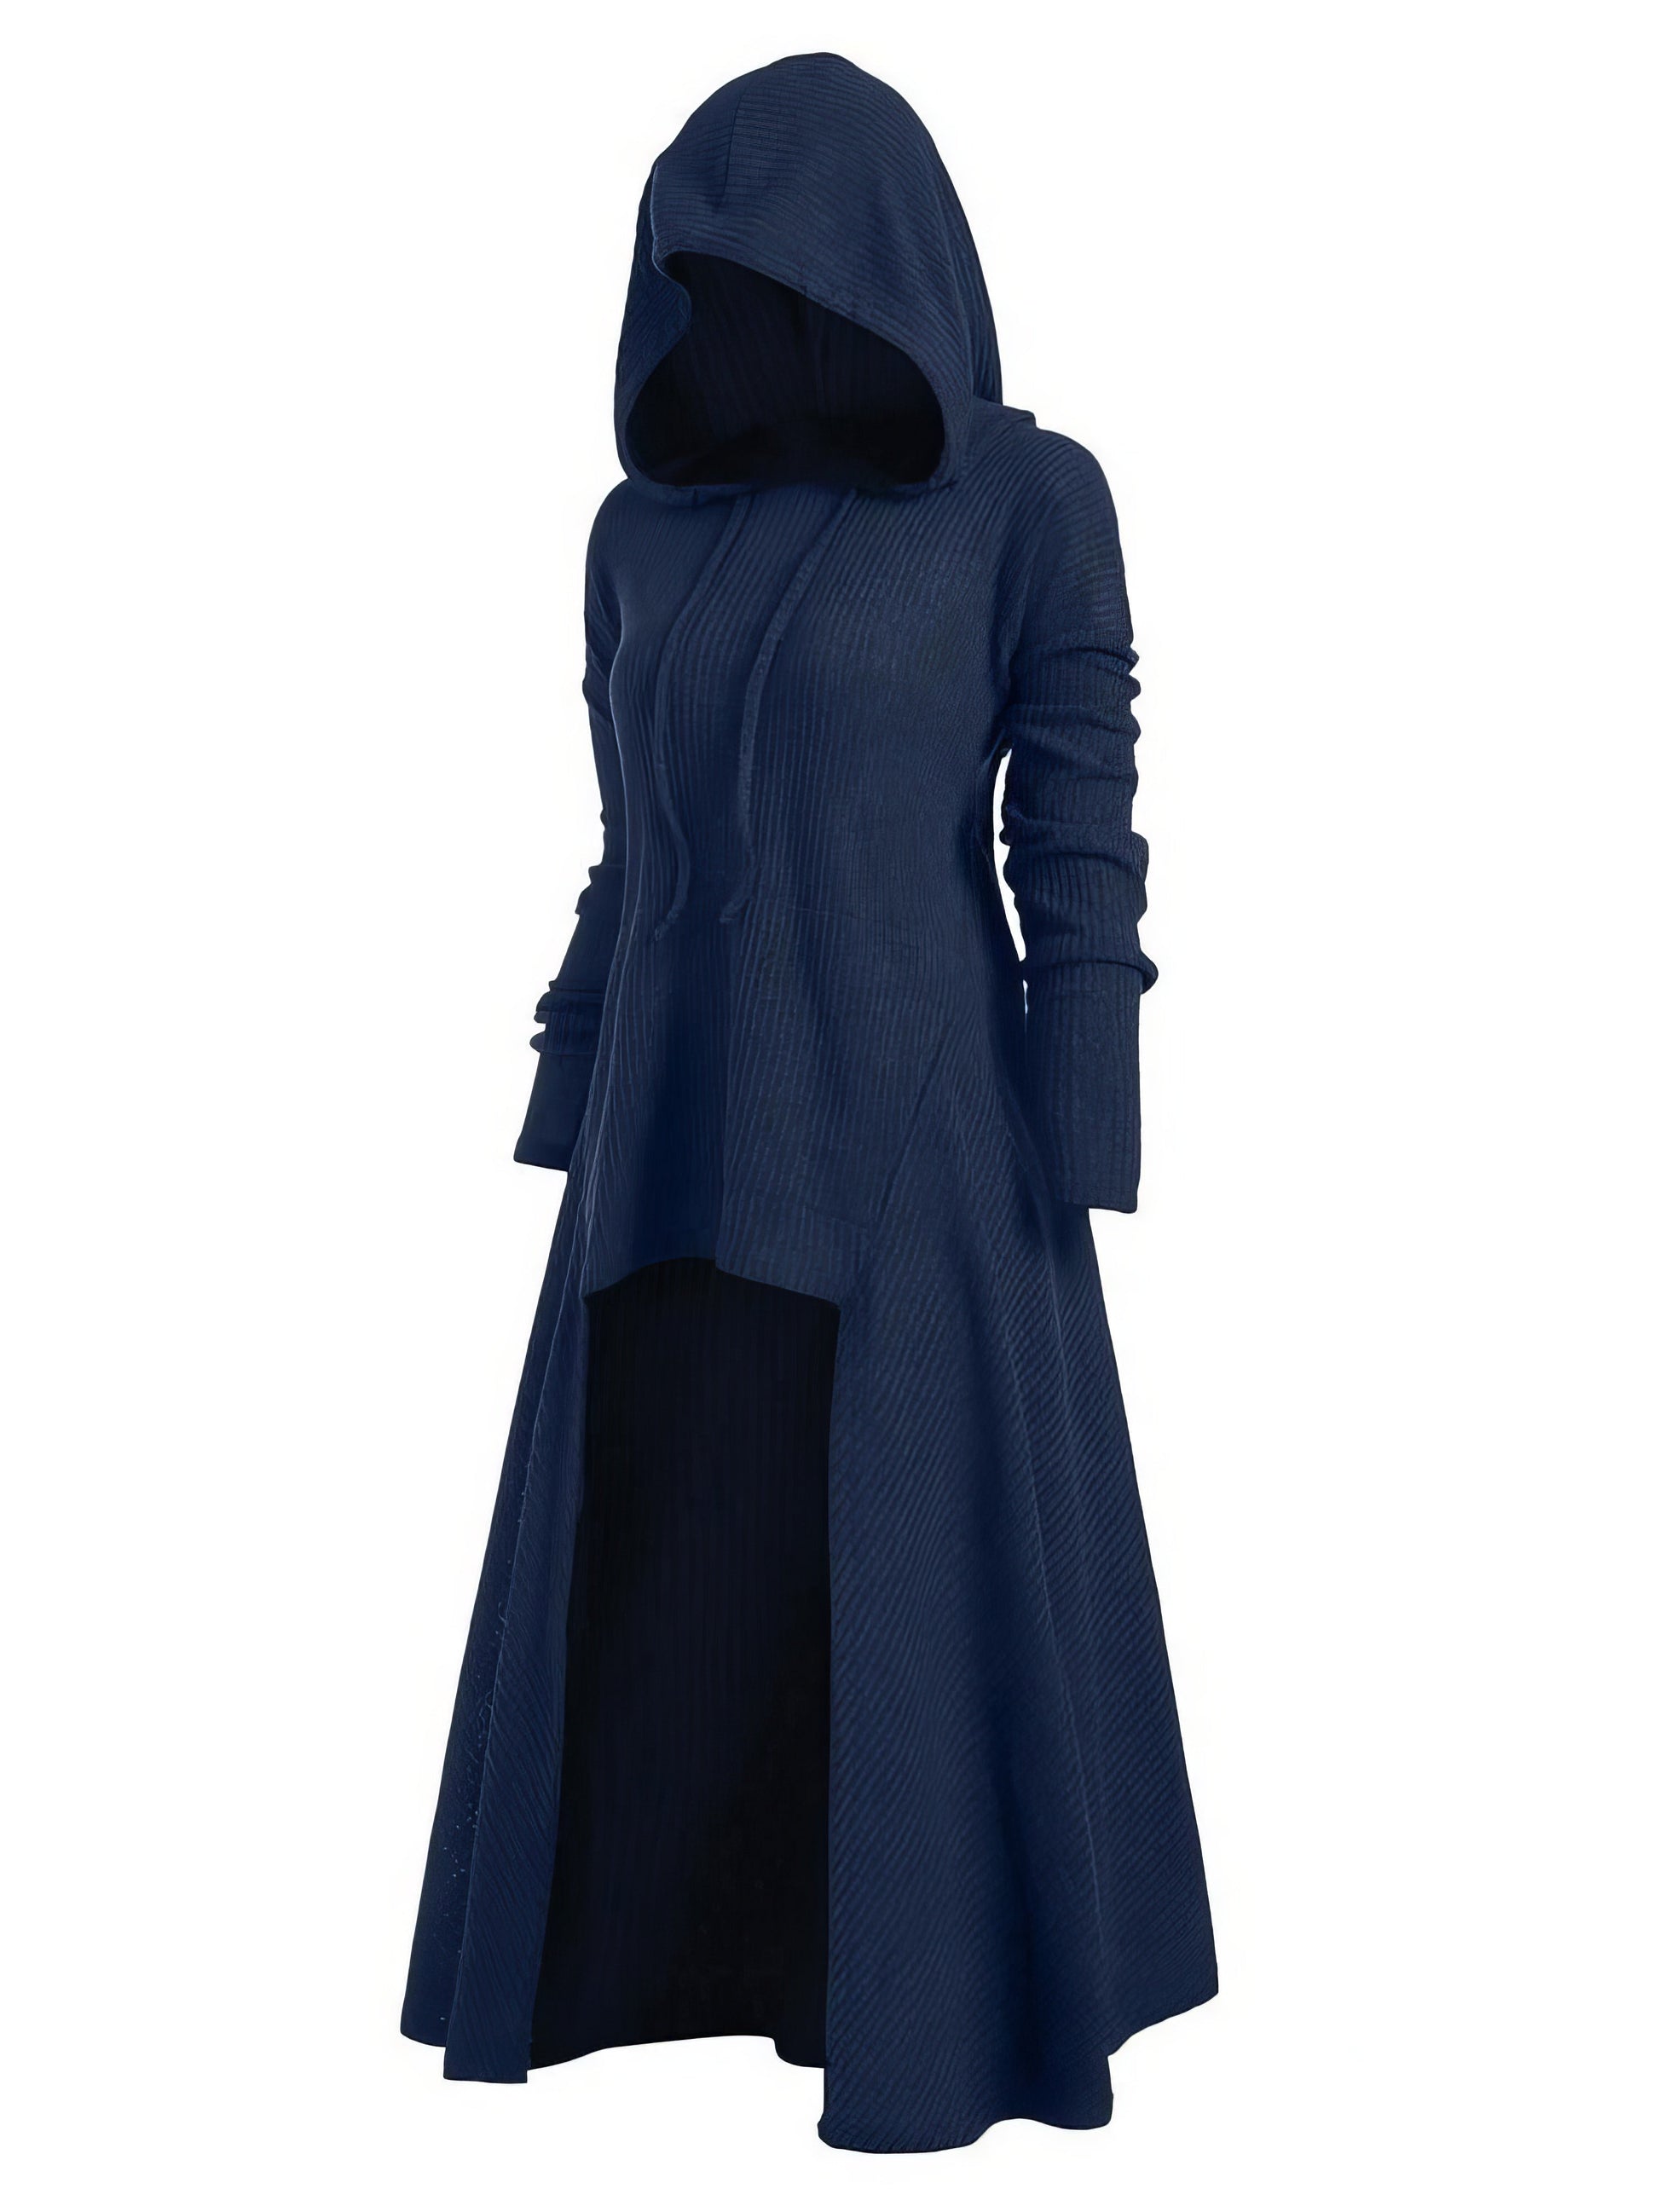 Maxi Dresses - Night Knight Pullover Hooded Coat Dress - MsDressly